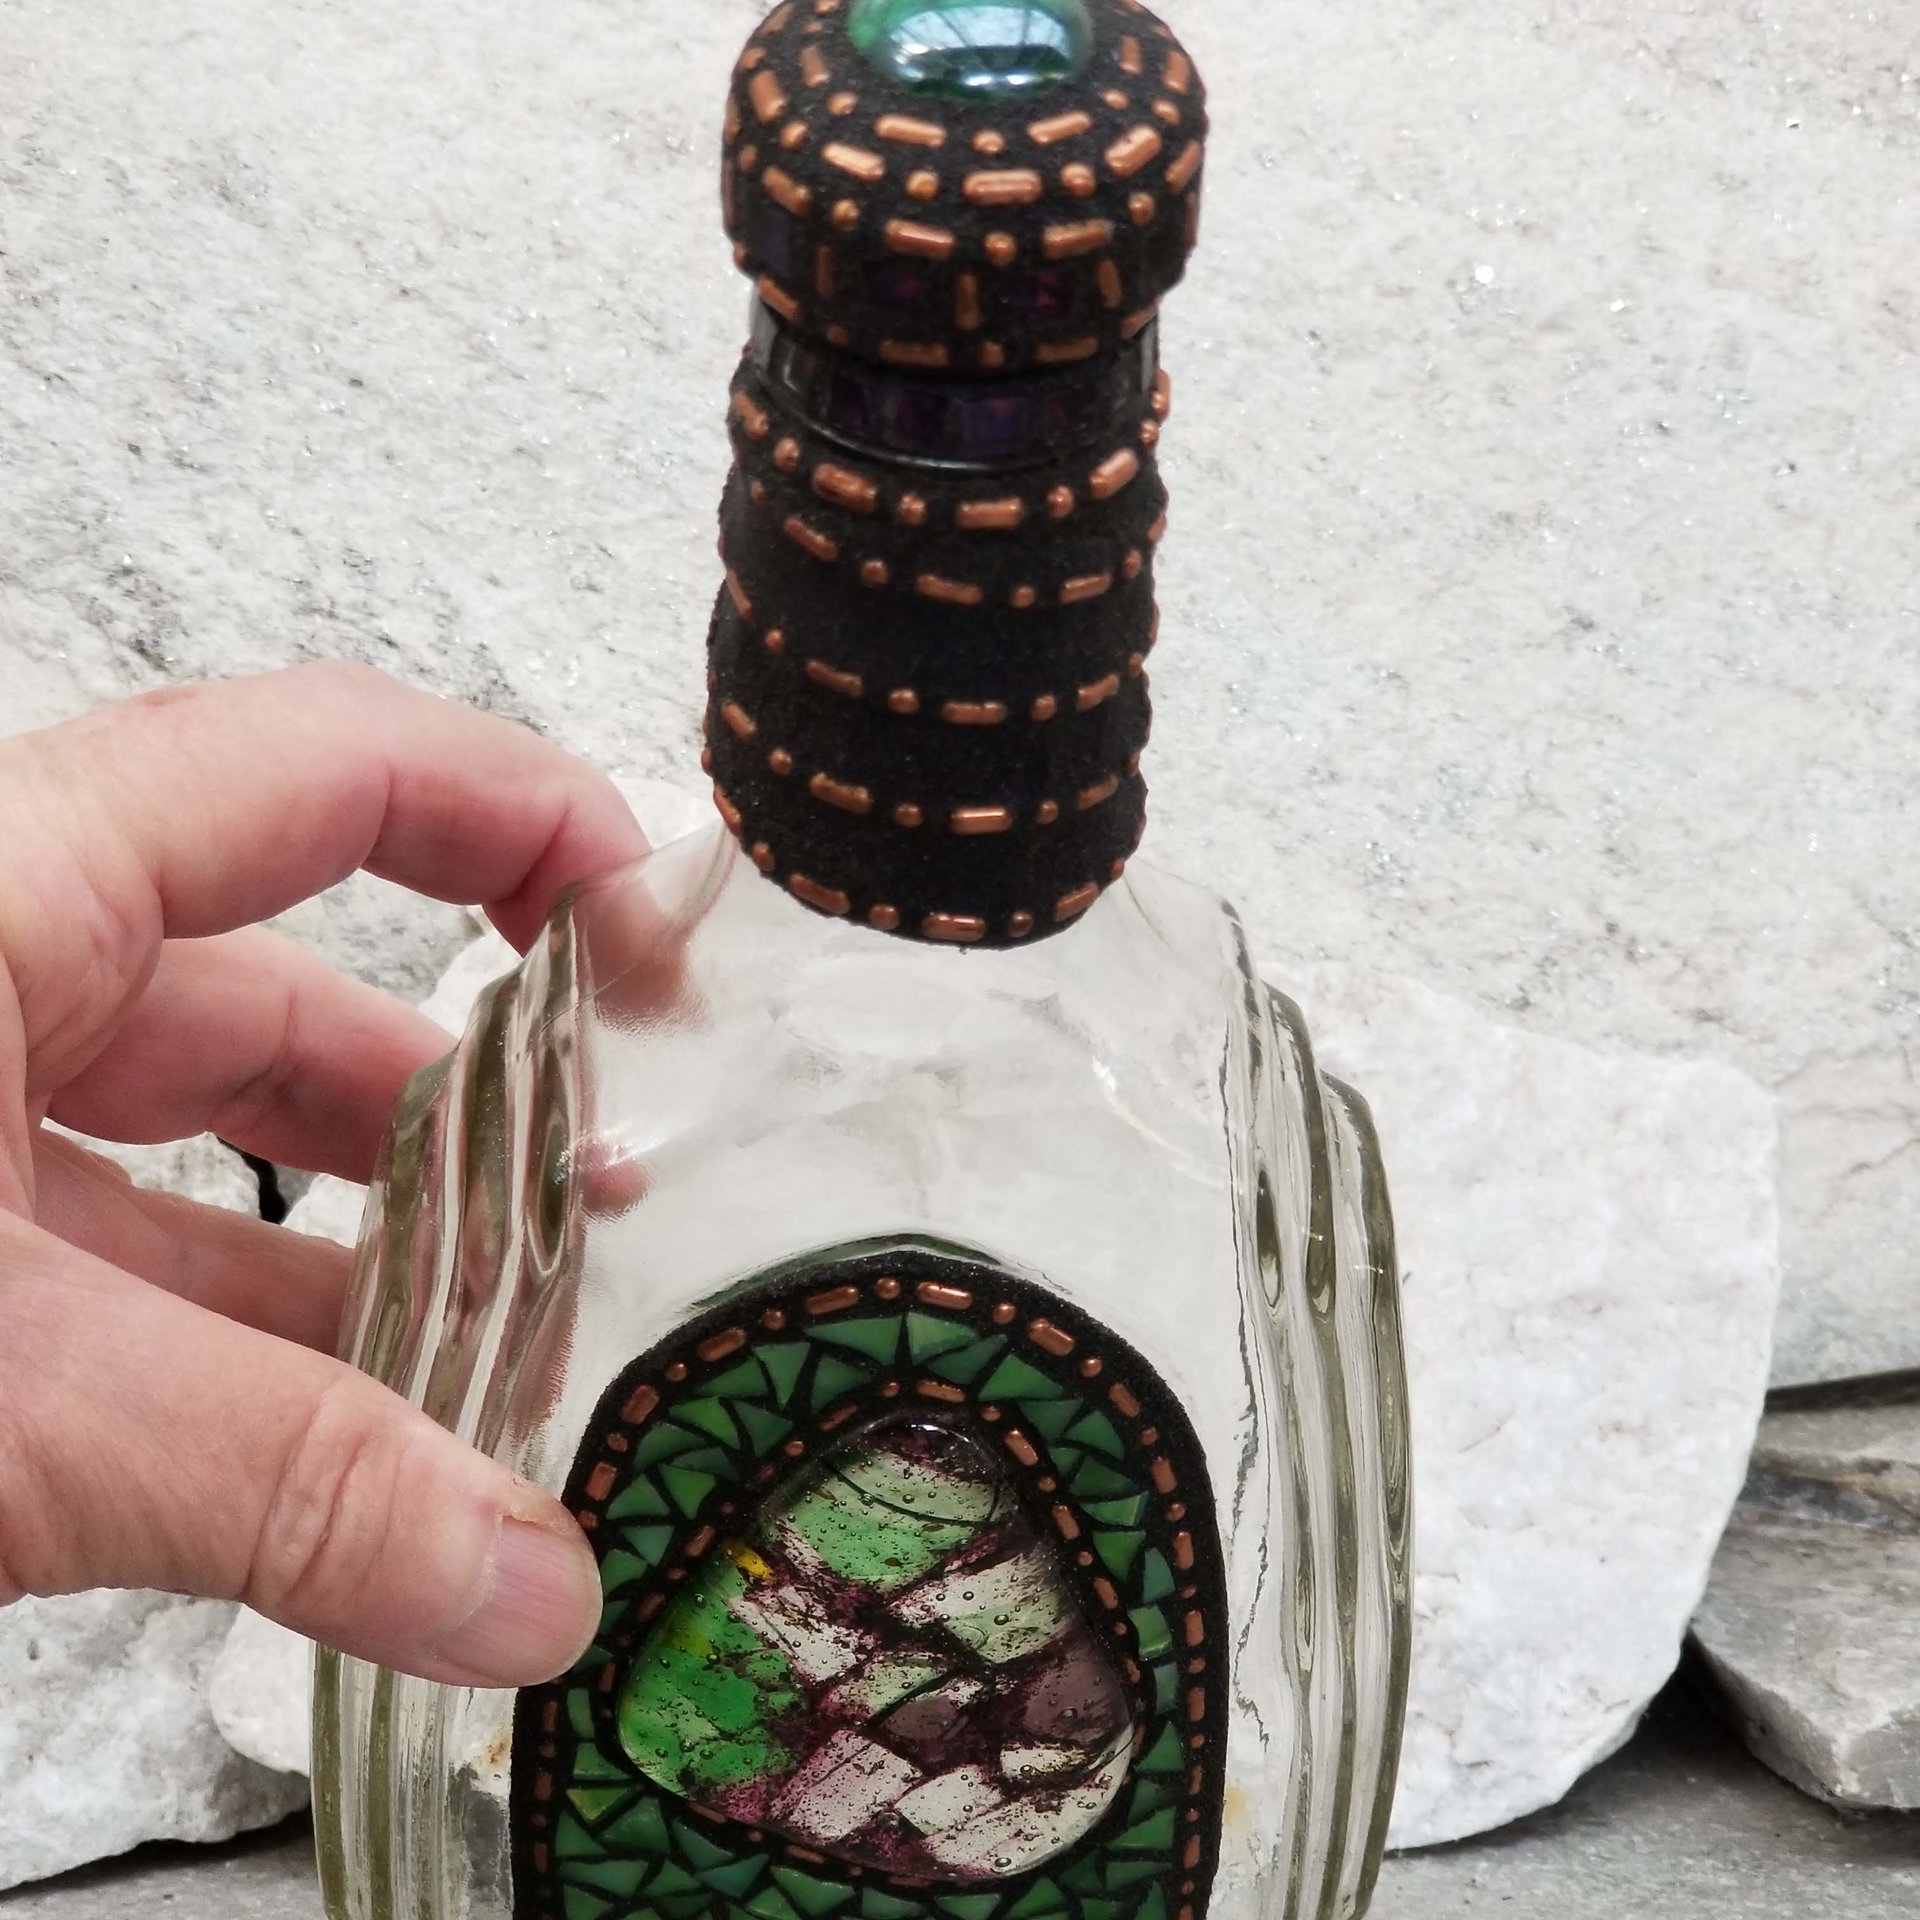 Mosaic Liquor Bottle “Woodland” Up-cycled Decanter